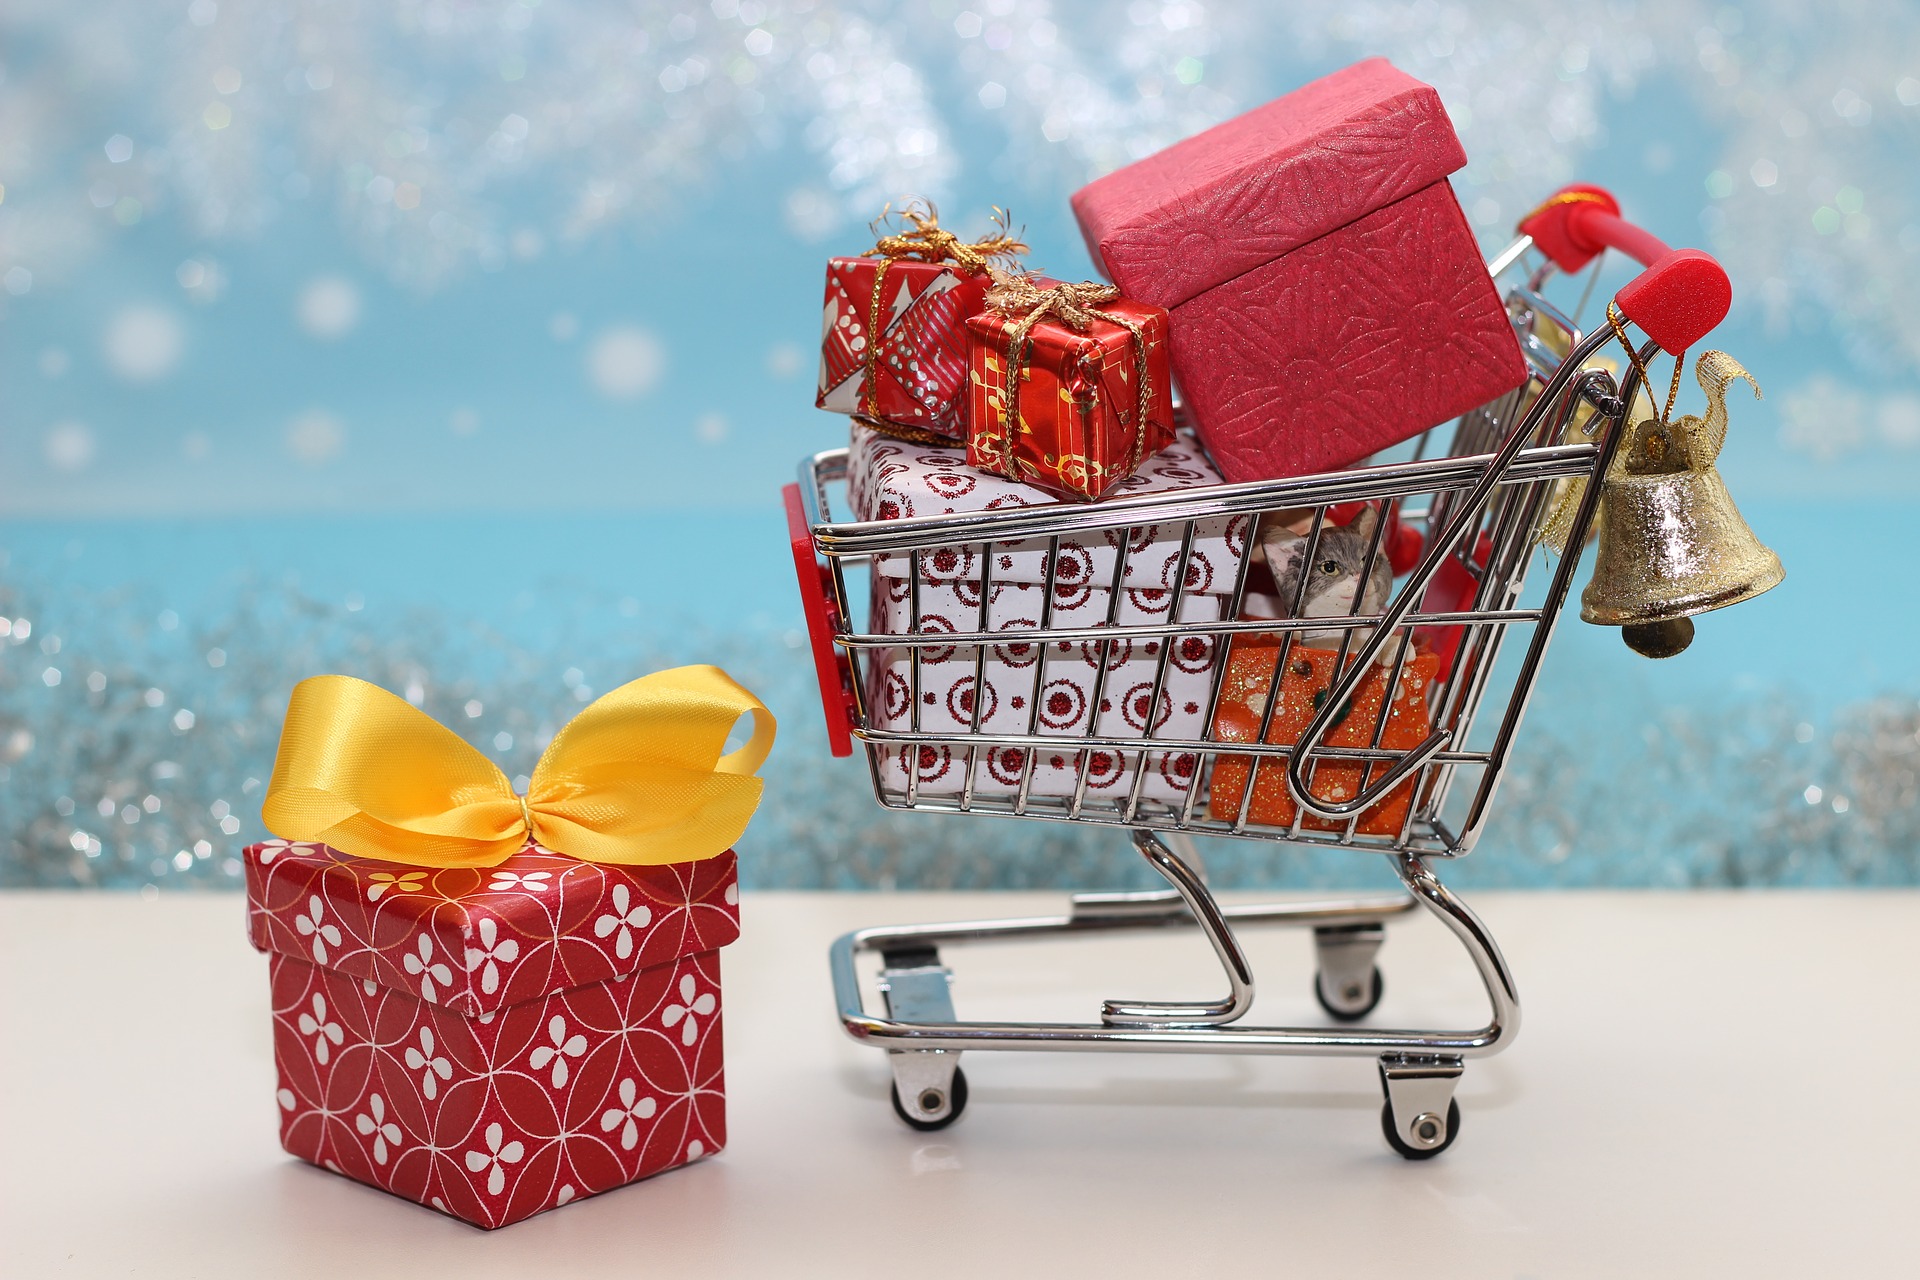 Garance doručení zboží do Vánoc a dodání zboží v lednu 2022